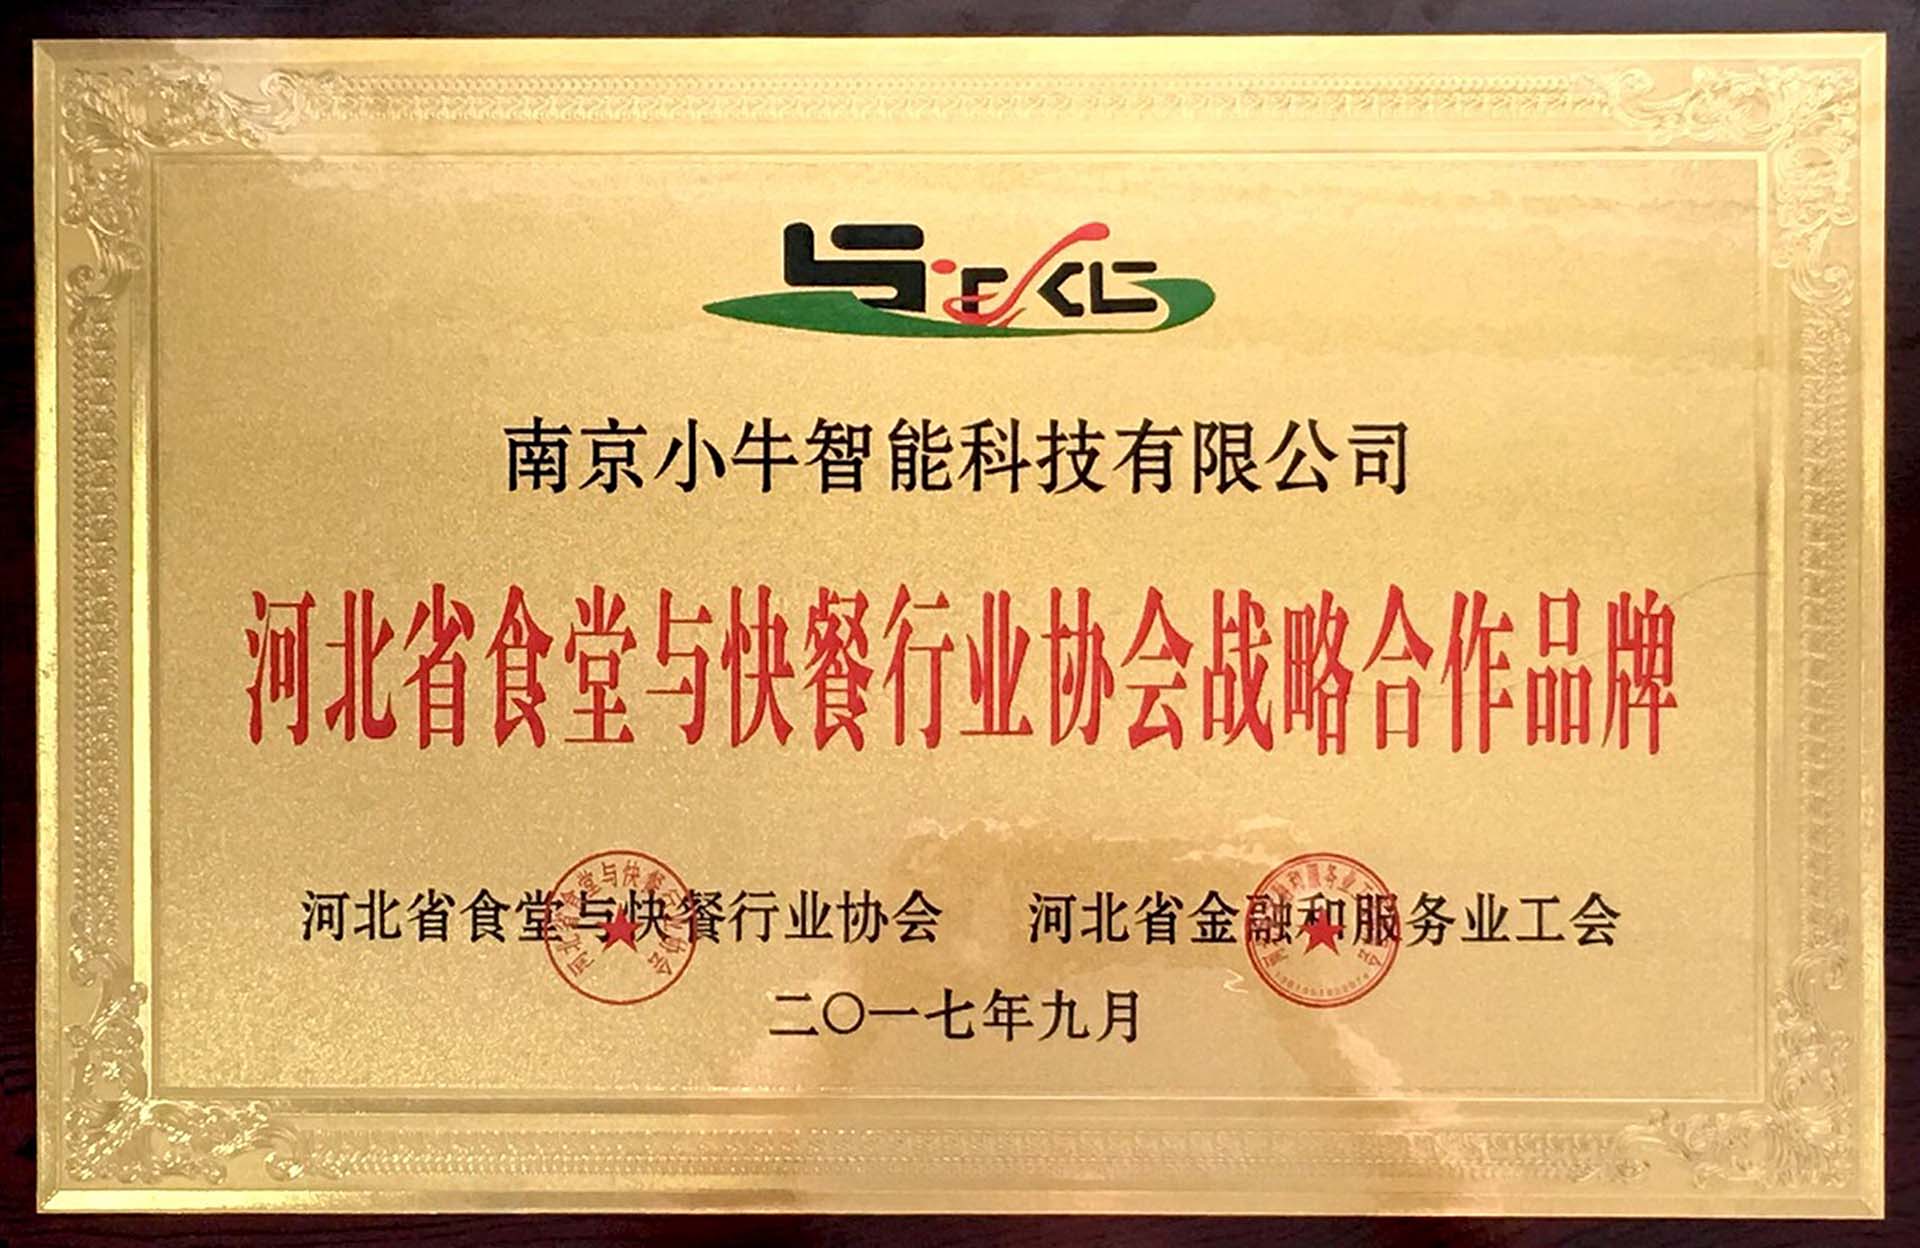 河北省食堂与快餐行业协会战略合作品牌